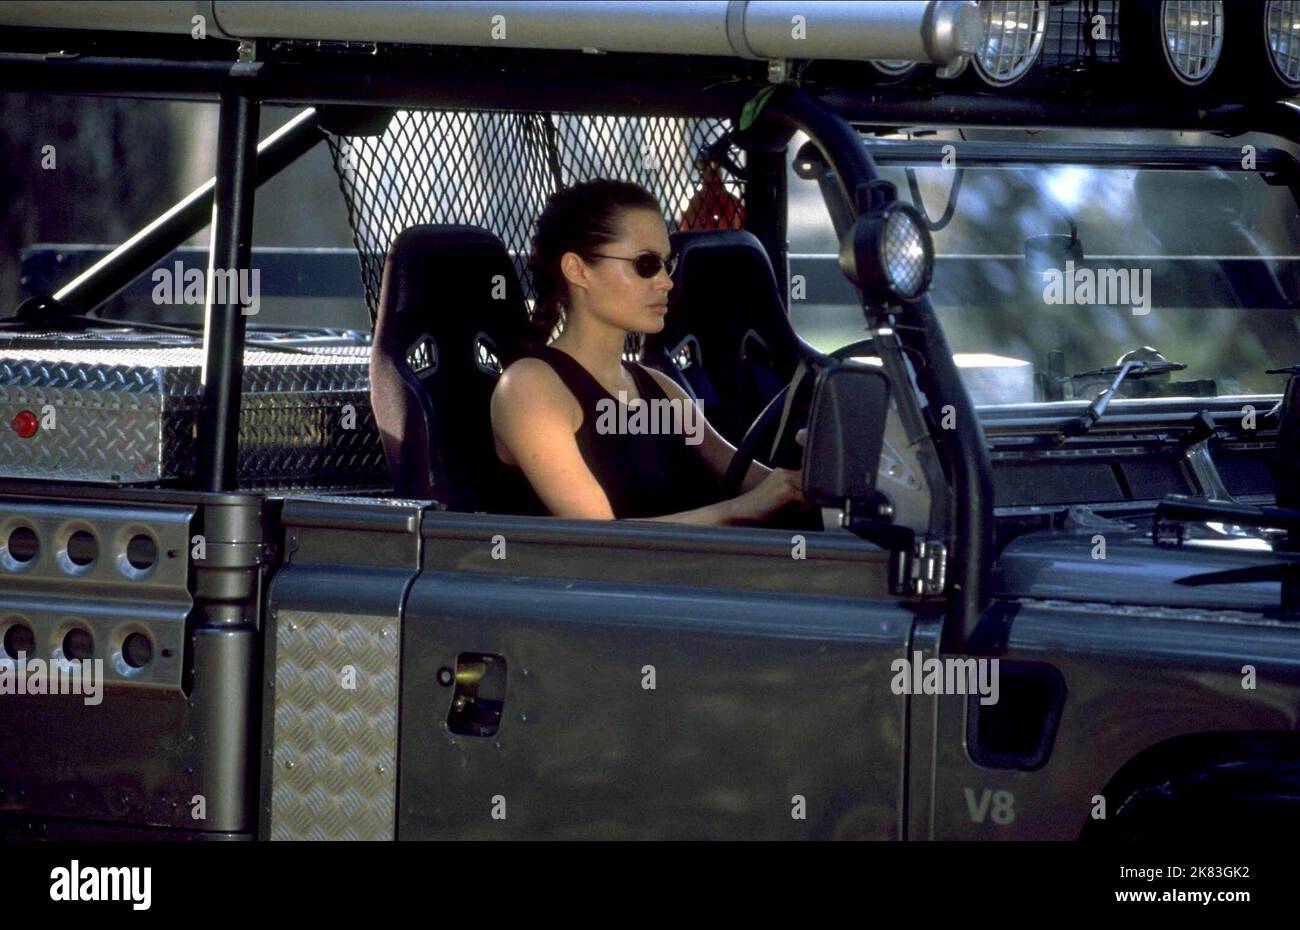 Angelina Jolie Film: Lara Croft: Tomb Raider (USA/UK/DE/JP 2001) Charaktere: Lara Croft / 1999 Land-Rover Defender 110 High Capacity Pick Up Regie: Simon West 11 June 2001 **WARNUNG** Dieses Foto ist nur für redaktionelle Zwecke bestimmt und unterliegt dem Copyright von PARAMOUNT und/oder des Fotografen, der von der Film- oder Produktionsfirma beauftragt wurde und darf nur von Publikationen im Zusammenhang mit der Bewerbung des oben genannten Films reproduziert werden. Eine obligatorische Gutschrift an PARAMOUNT ist erforderlich. Der Fotograf sollte auch bei Bekanntwerden des Fotos gutgeschrieben werden. Ohne schriftliche Genehmigung des Films kann keine kommerzielle Nutzung gewährt werden Stockfoto